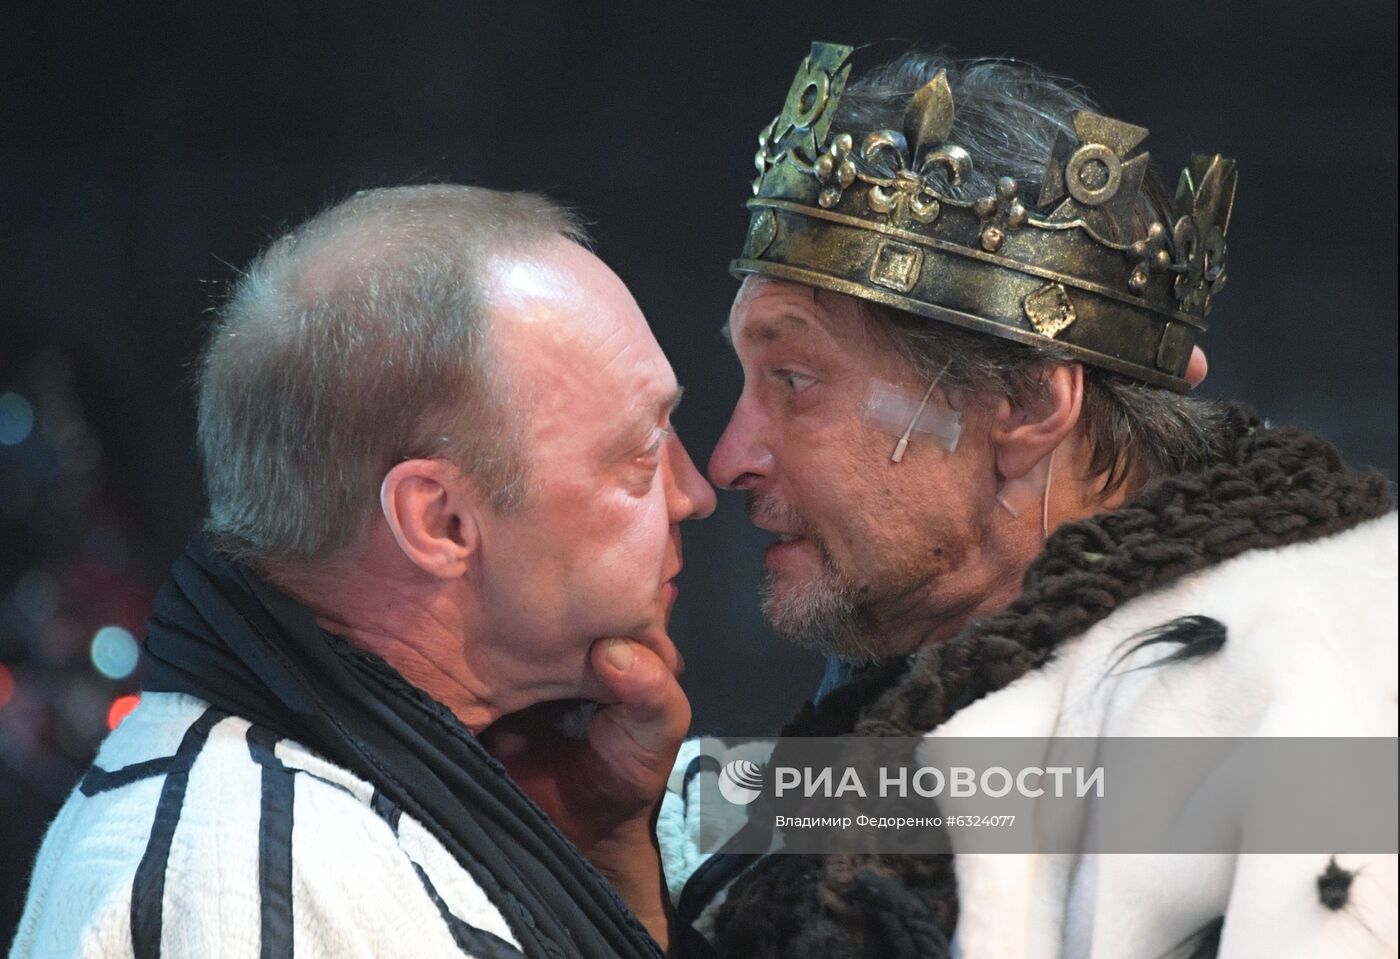 Спектакль "Ричард III" в Театре имени Моссовета